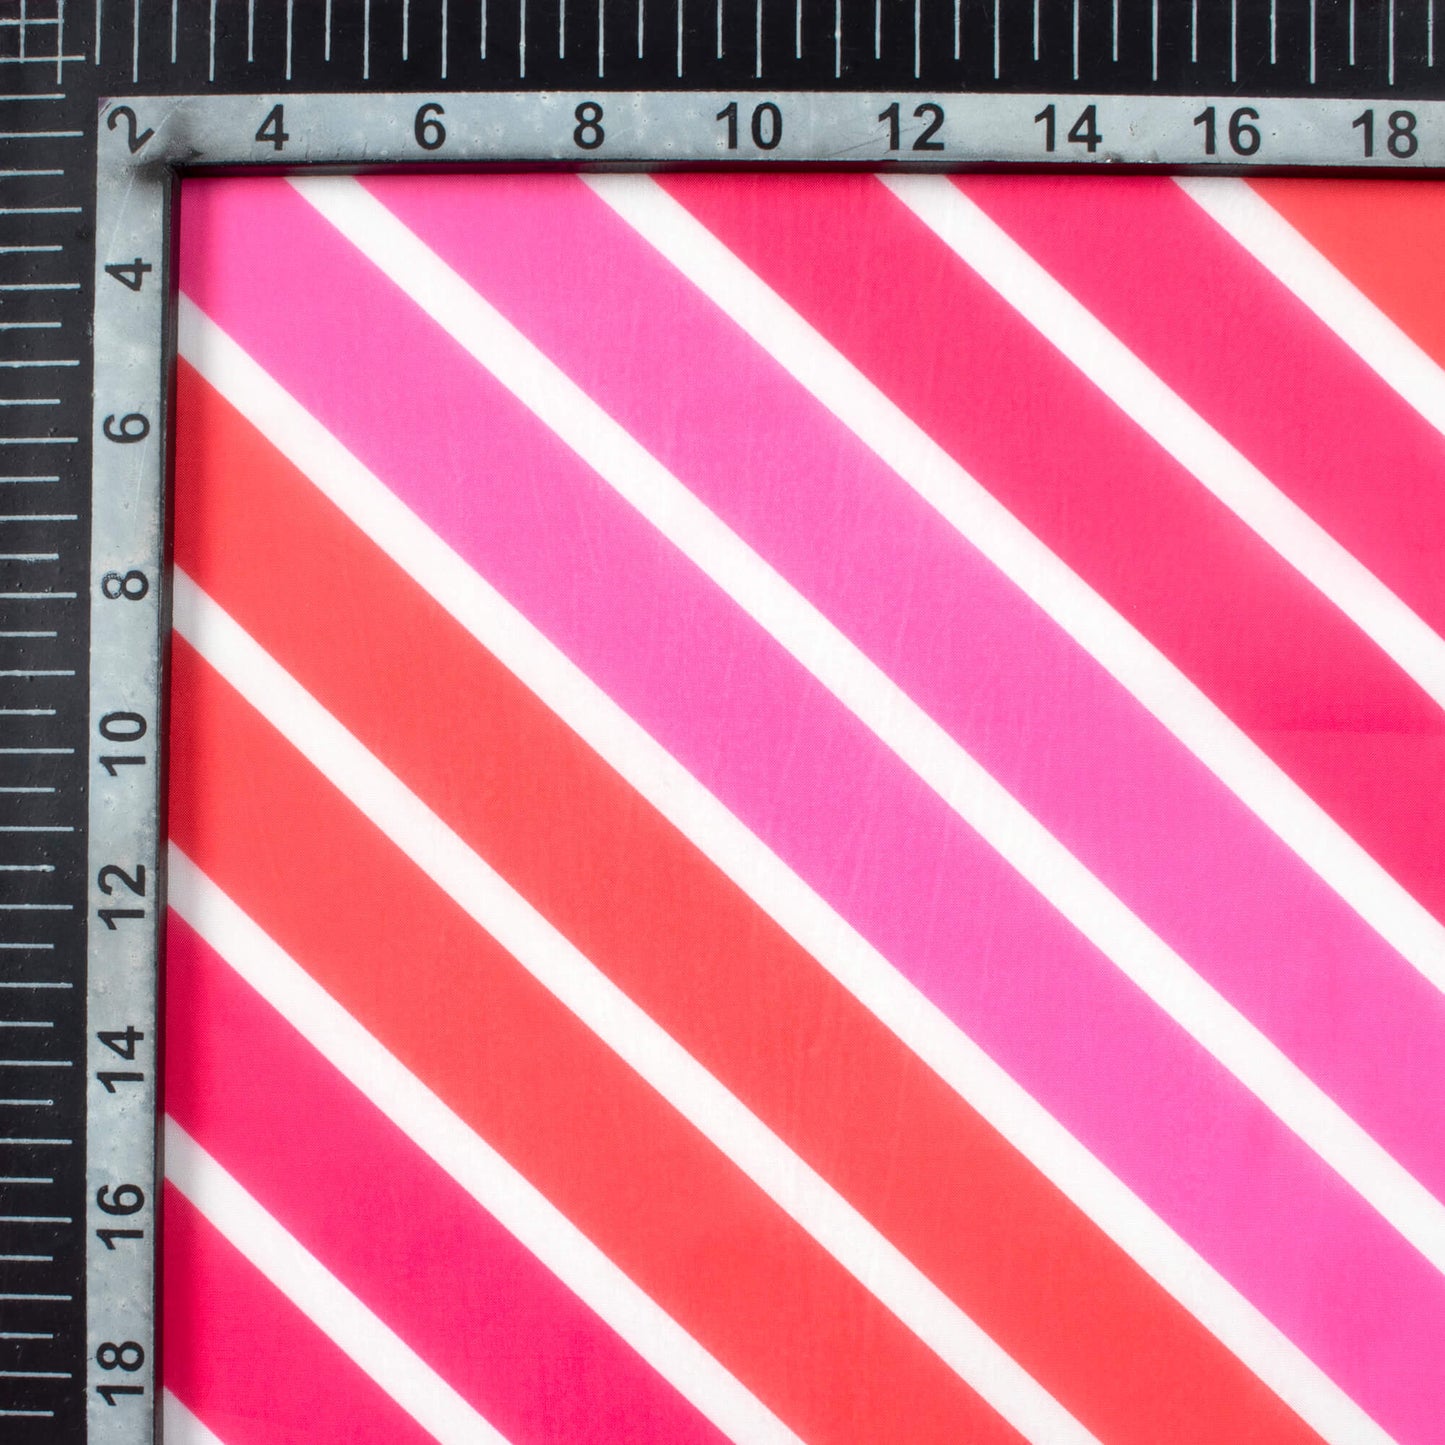 Hot Pink And Red Bandhani Pattern Digital Print Organza Satin Fabric